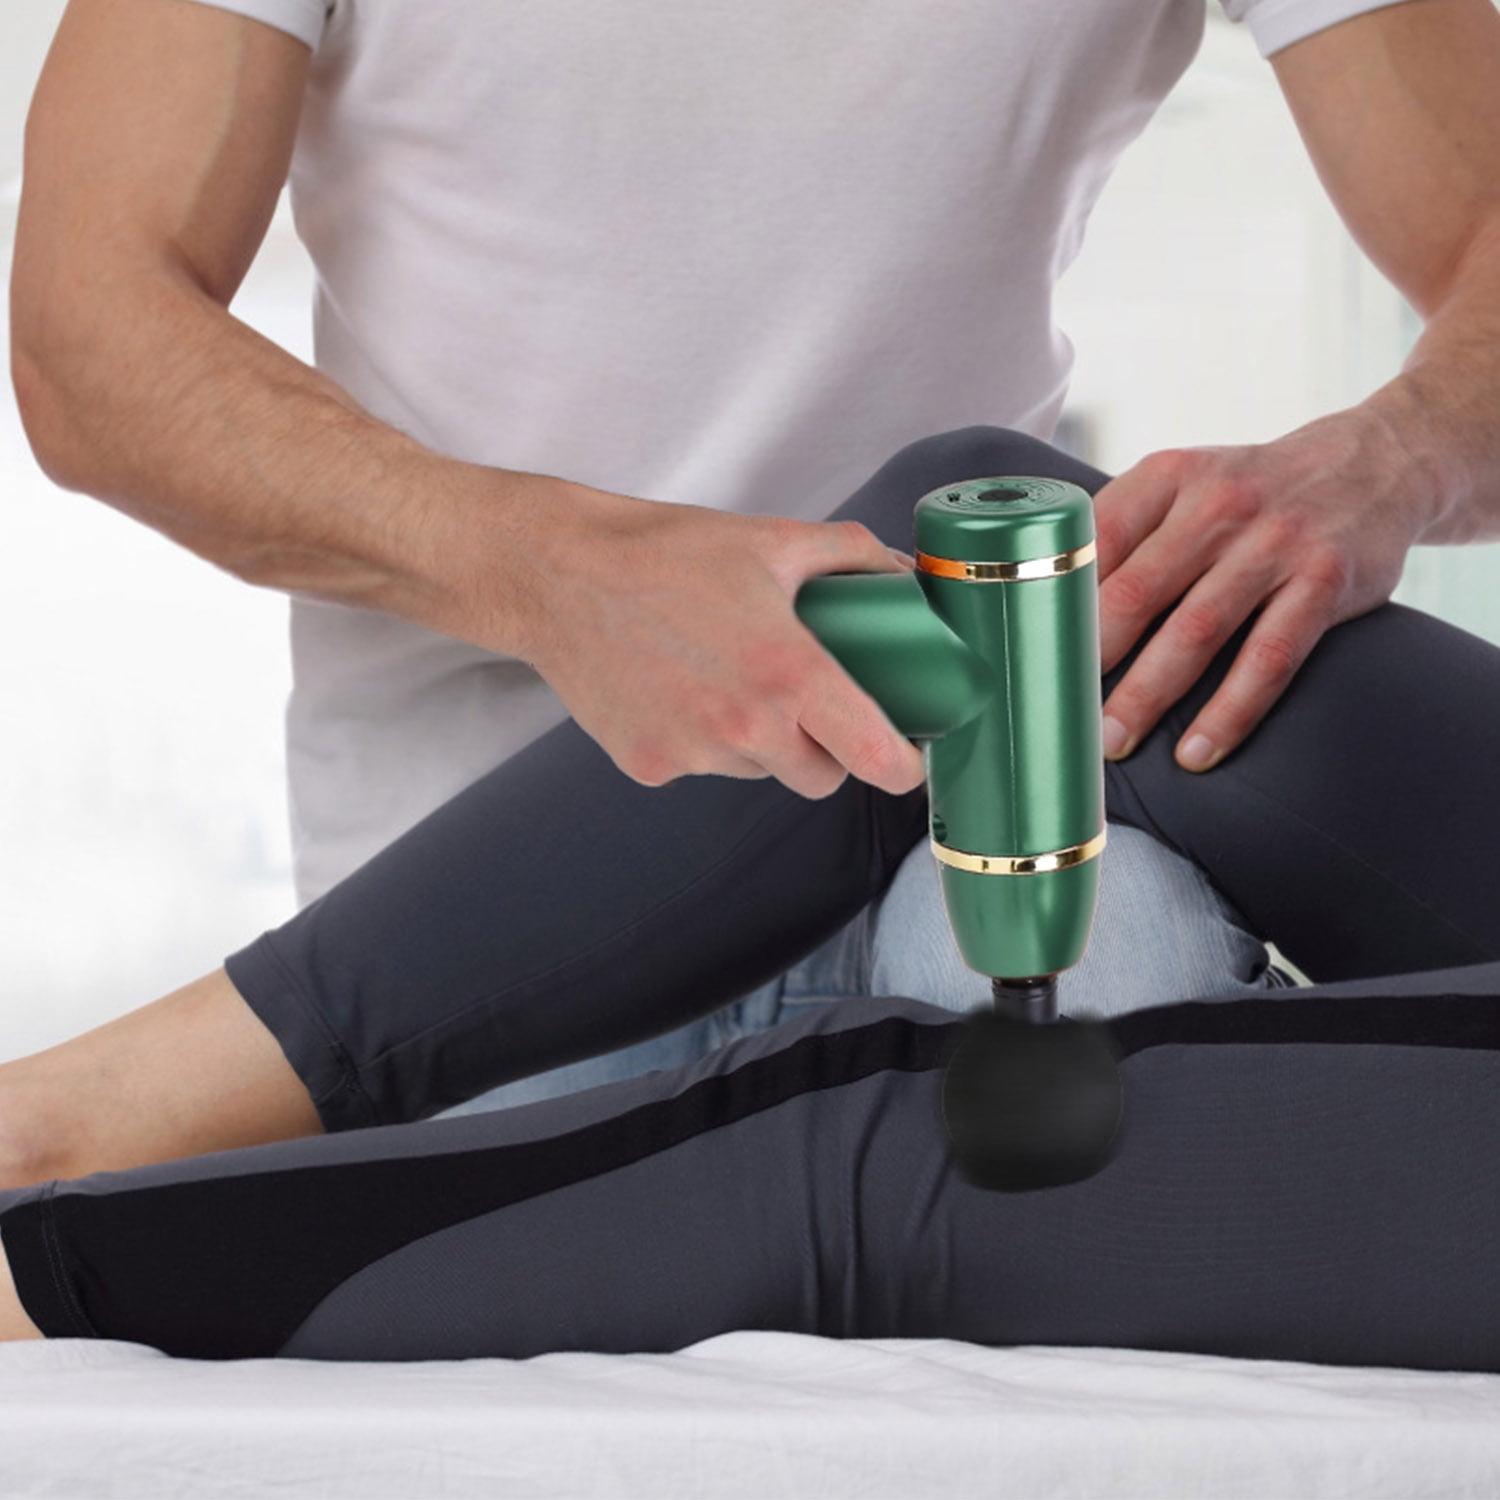 iMounTEK Cordless Electric Back Massager Deep Tissue Rechargeable Massager